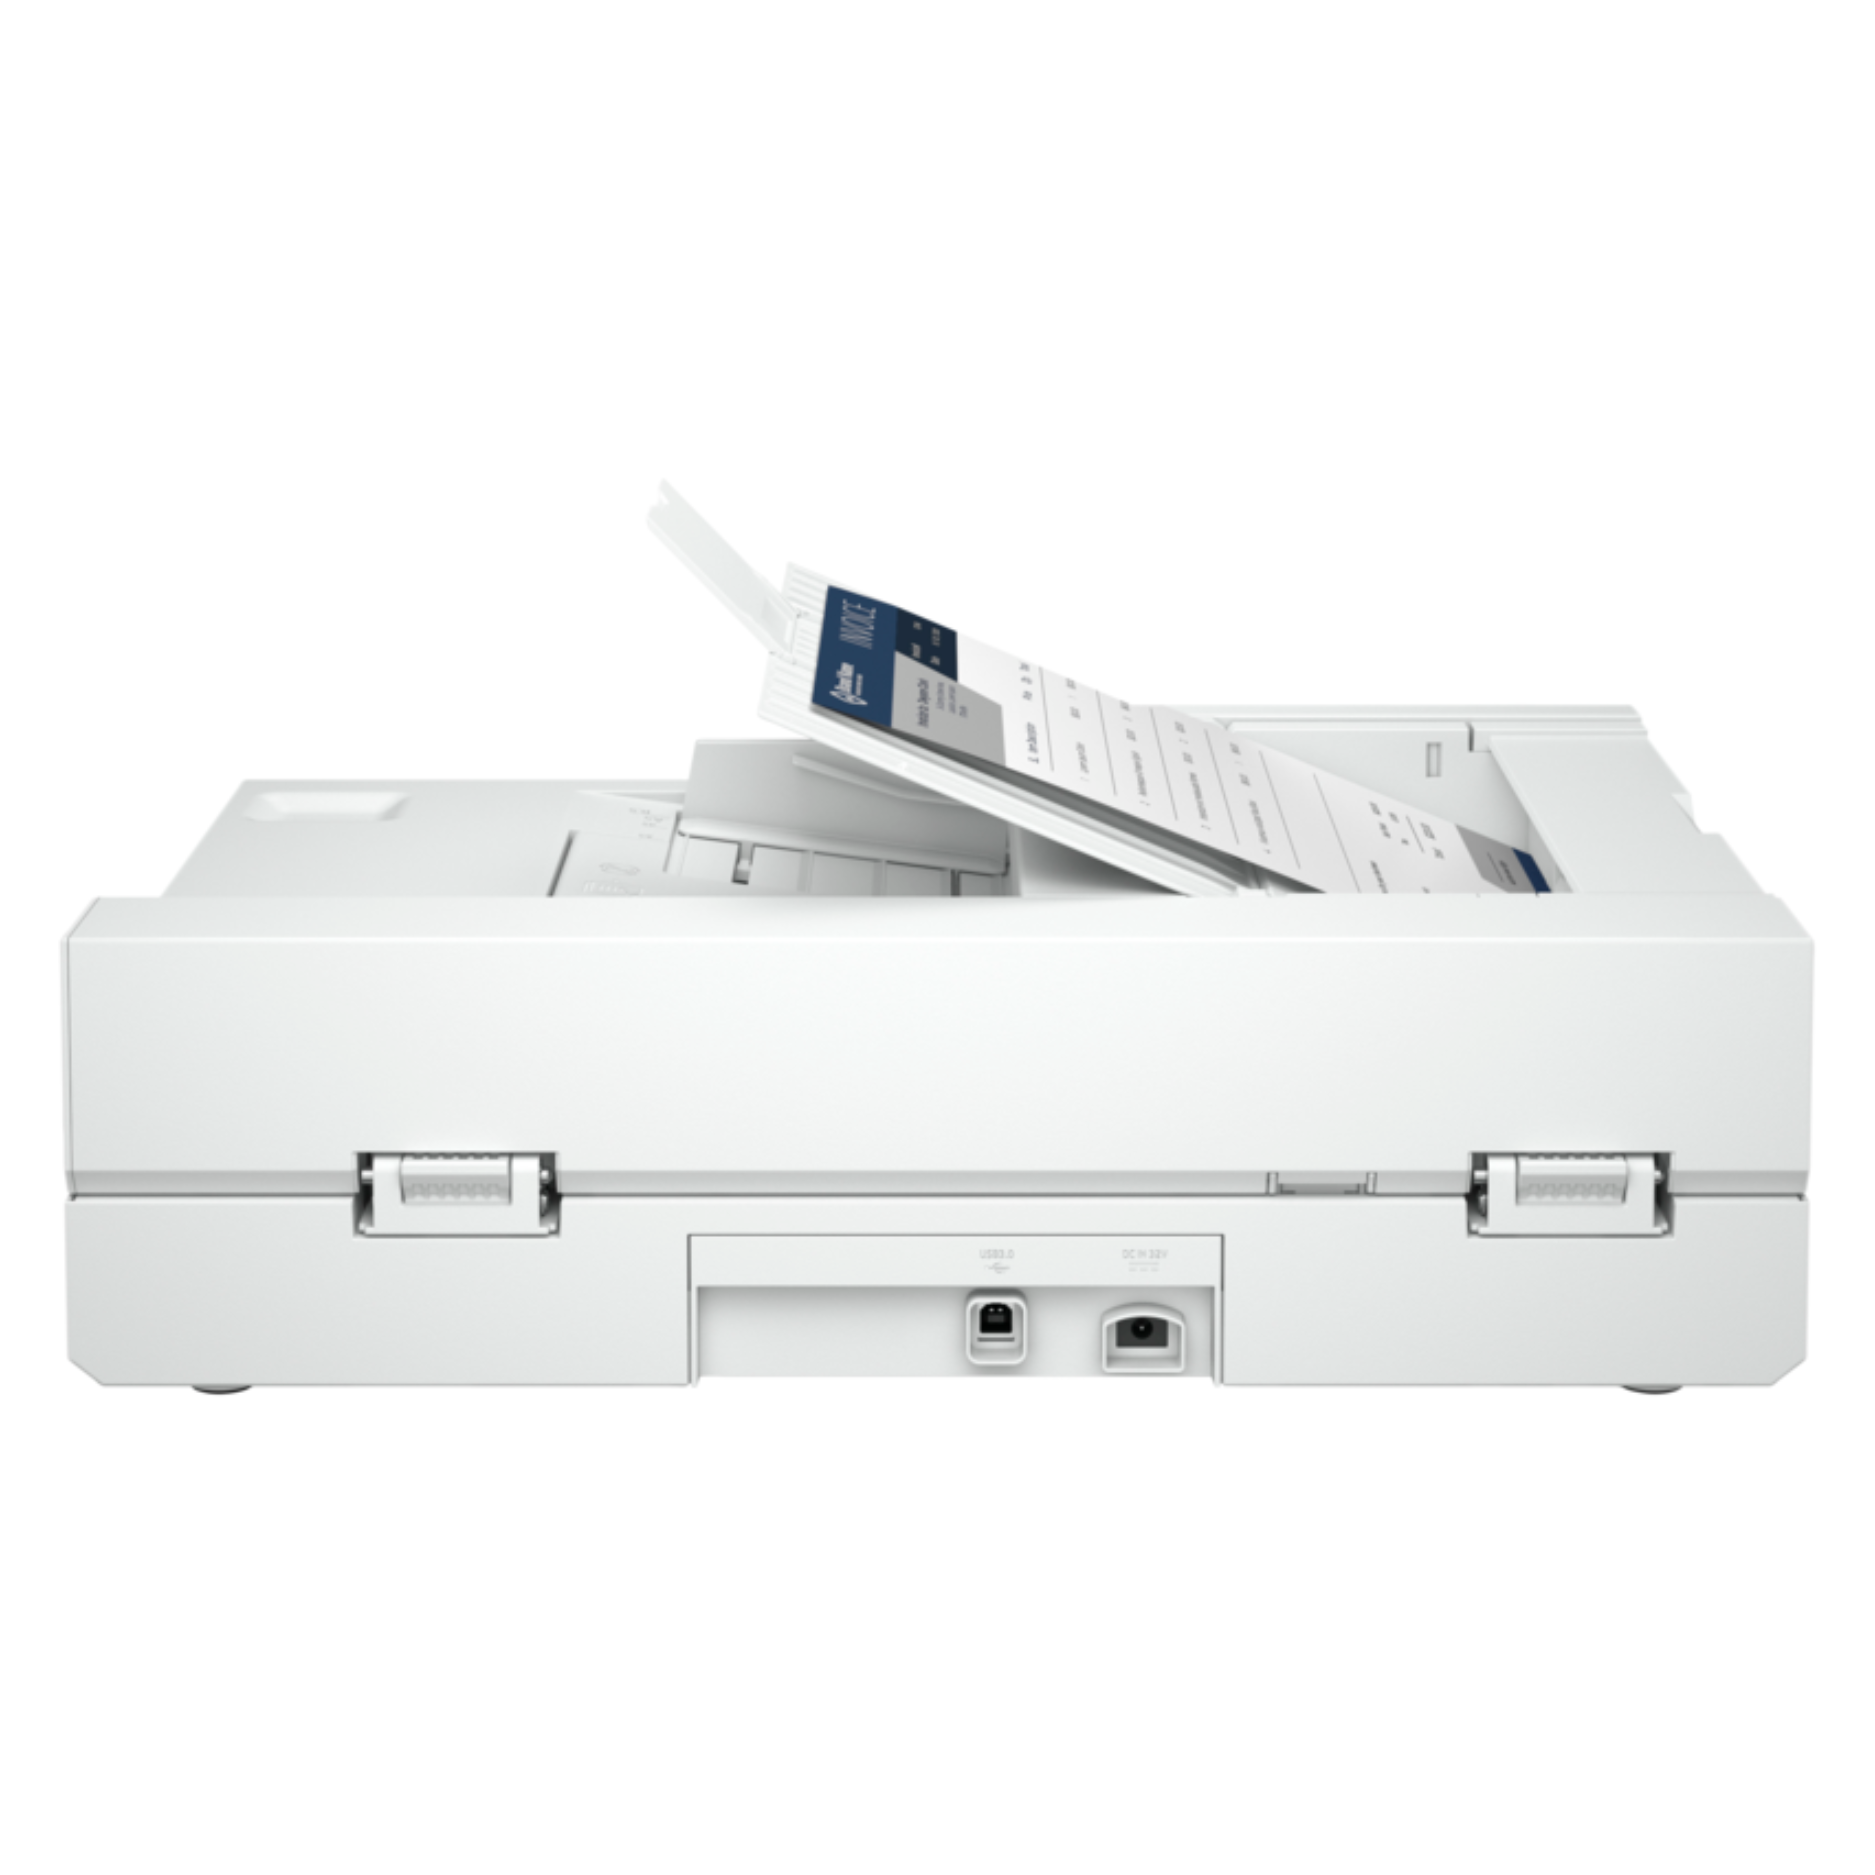 Escaner HP ScanJet Pro 2600 f1 (20G05A)